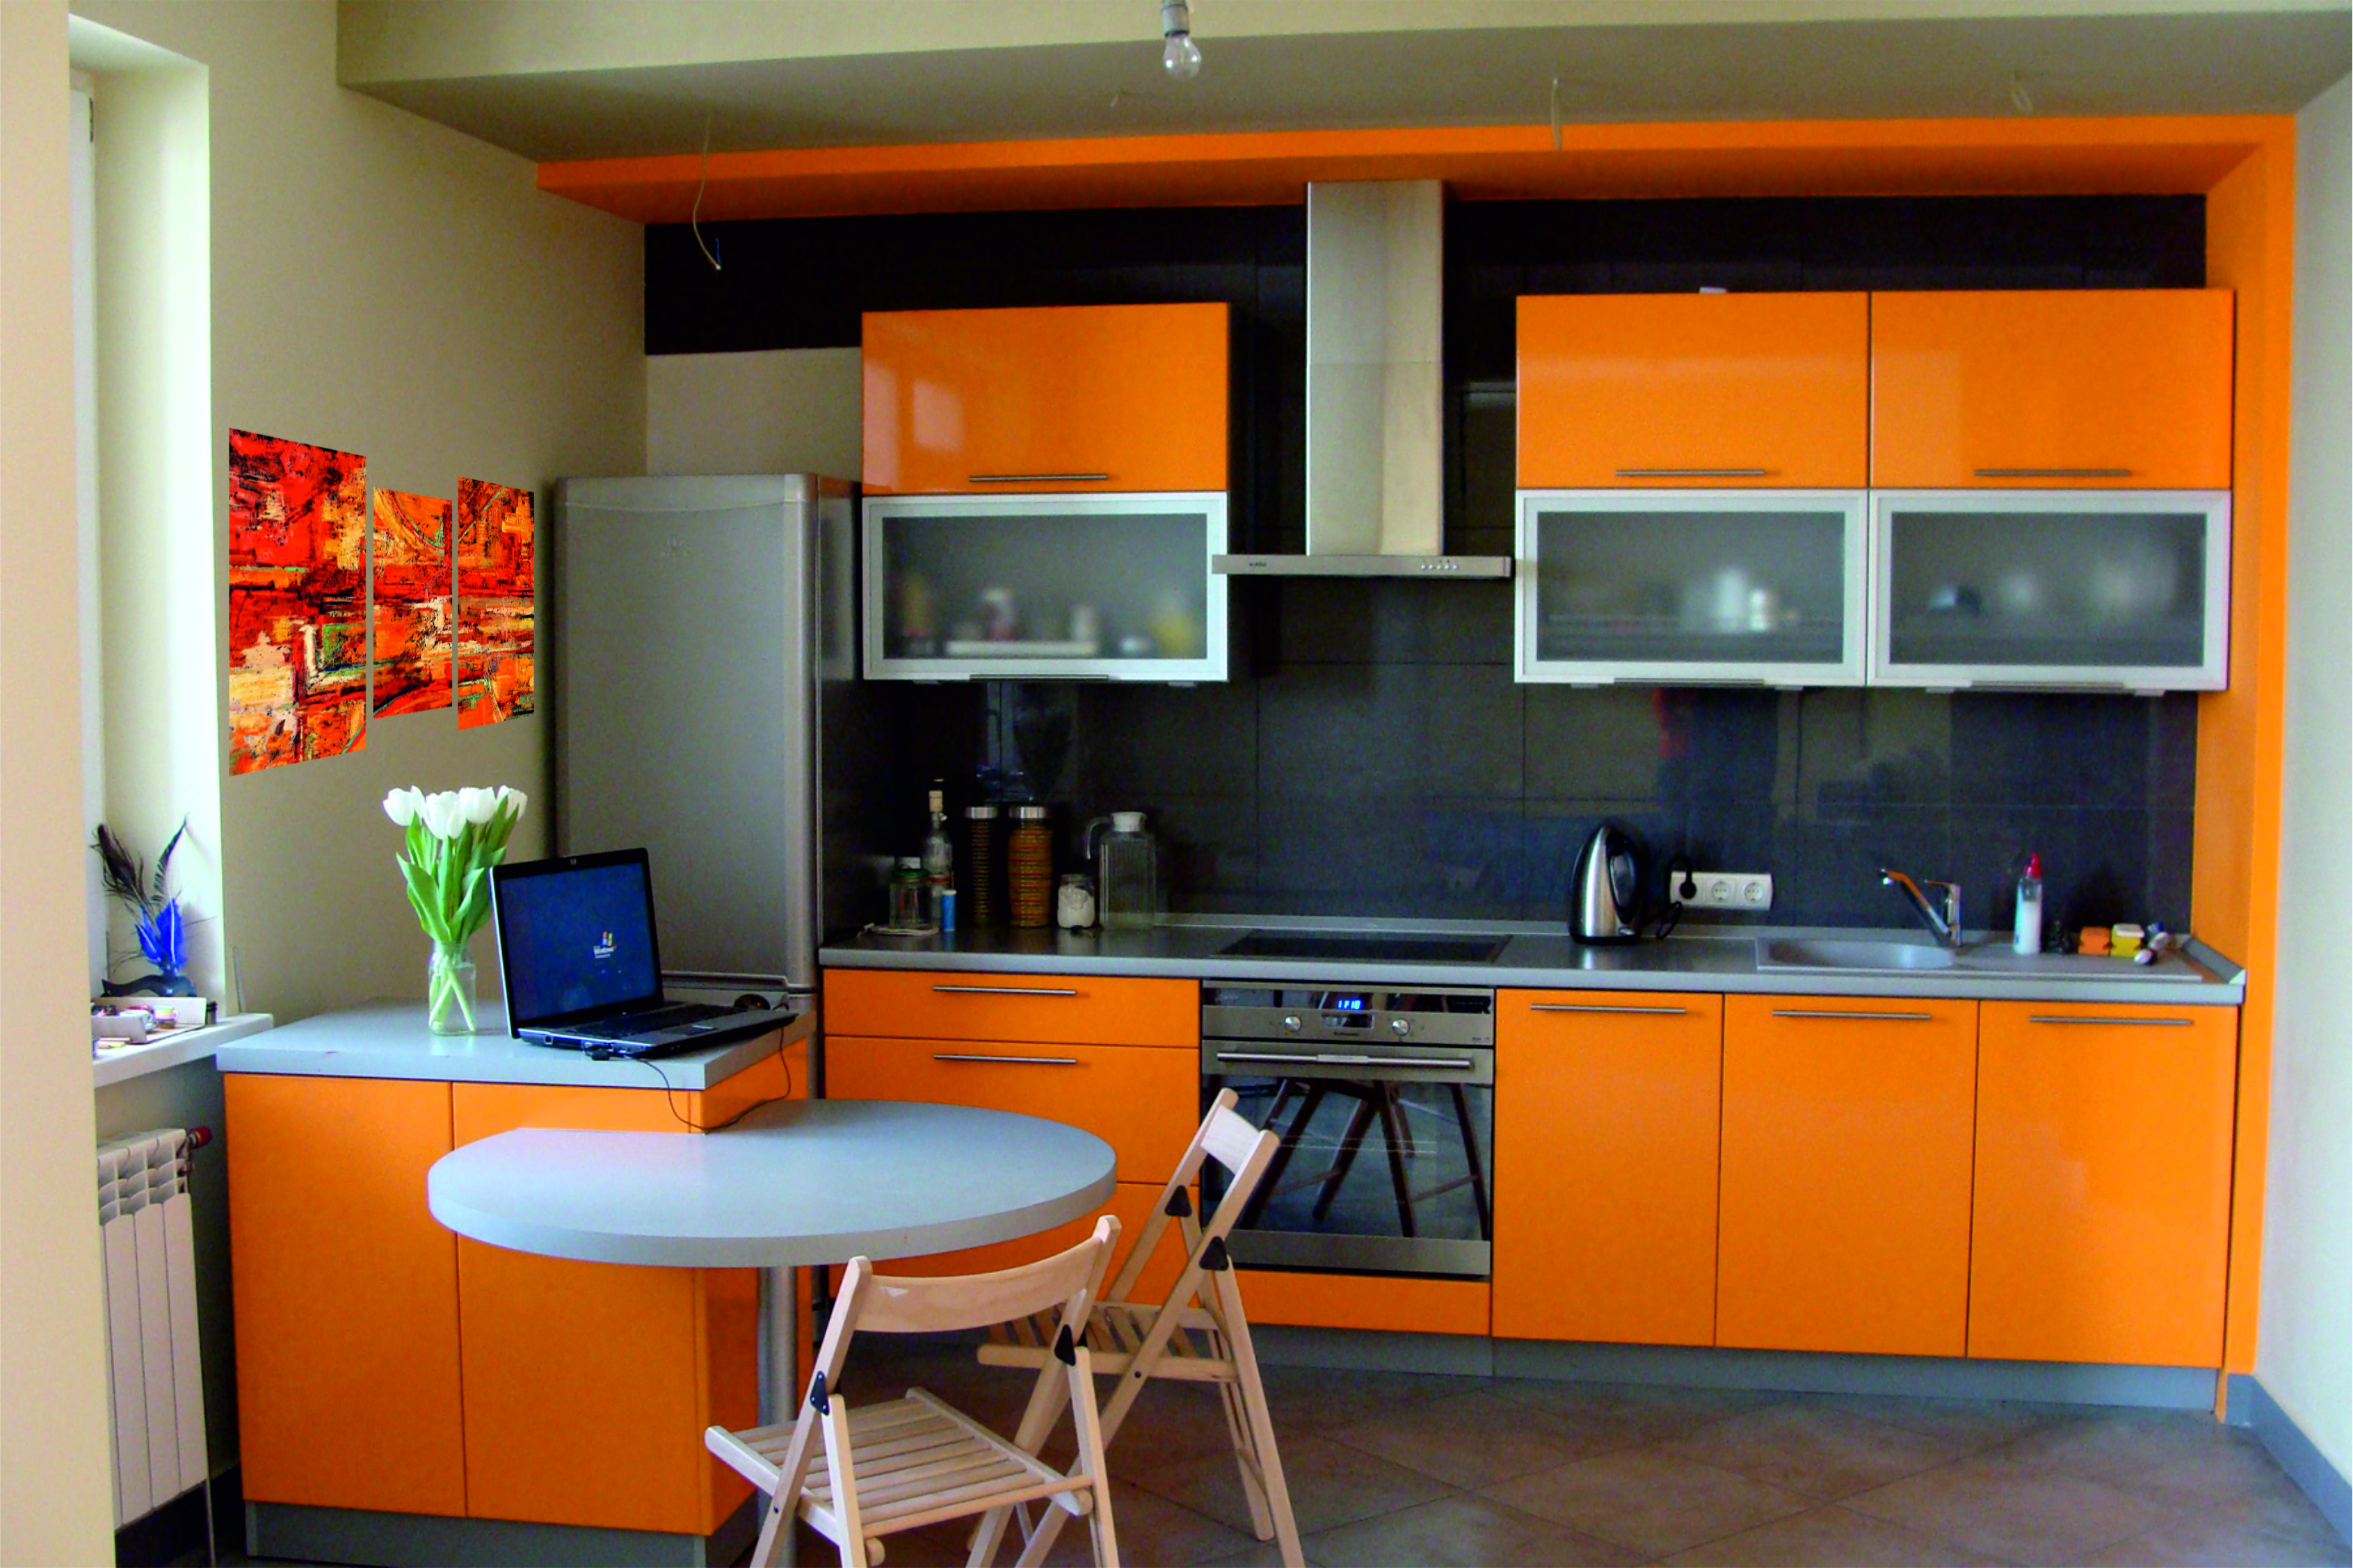 Форум какая кухня лучше. Кухни оранжевого цвета. Кухонные гарнитуры оранжевого цвета. Оранжевая кухня в интерьере. Оранжевый цвет в интерьере кухни.